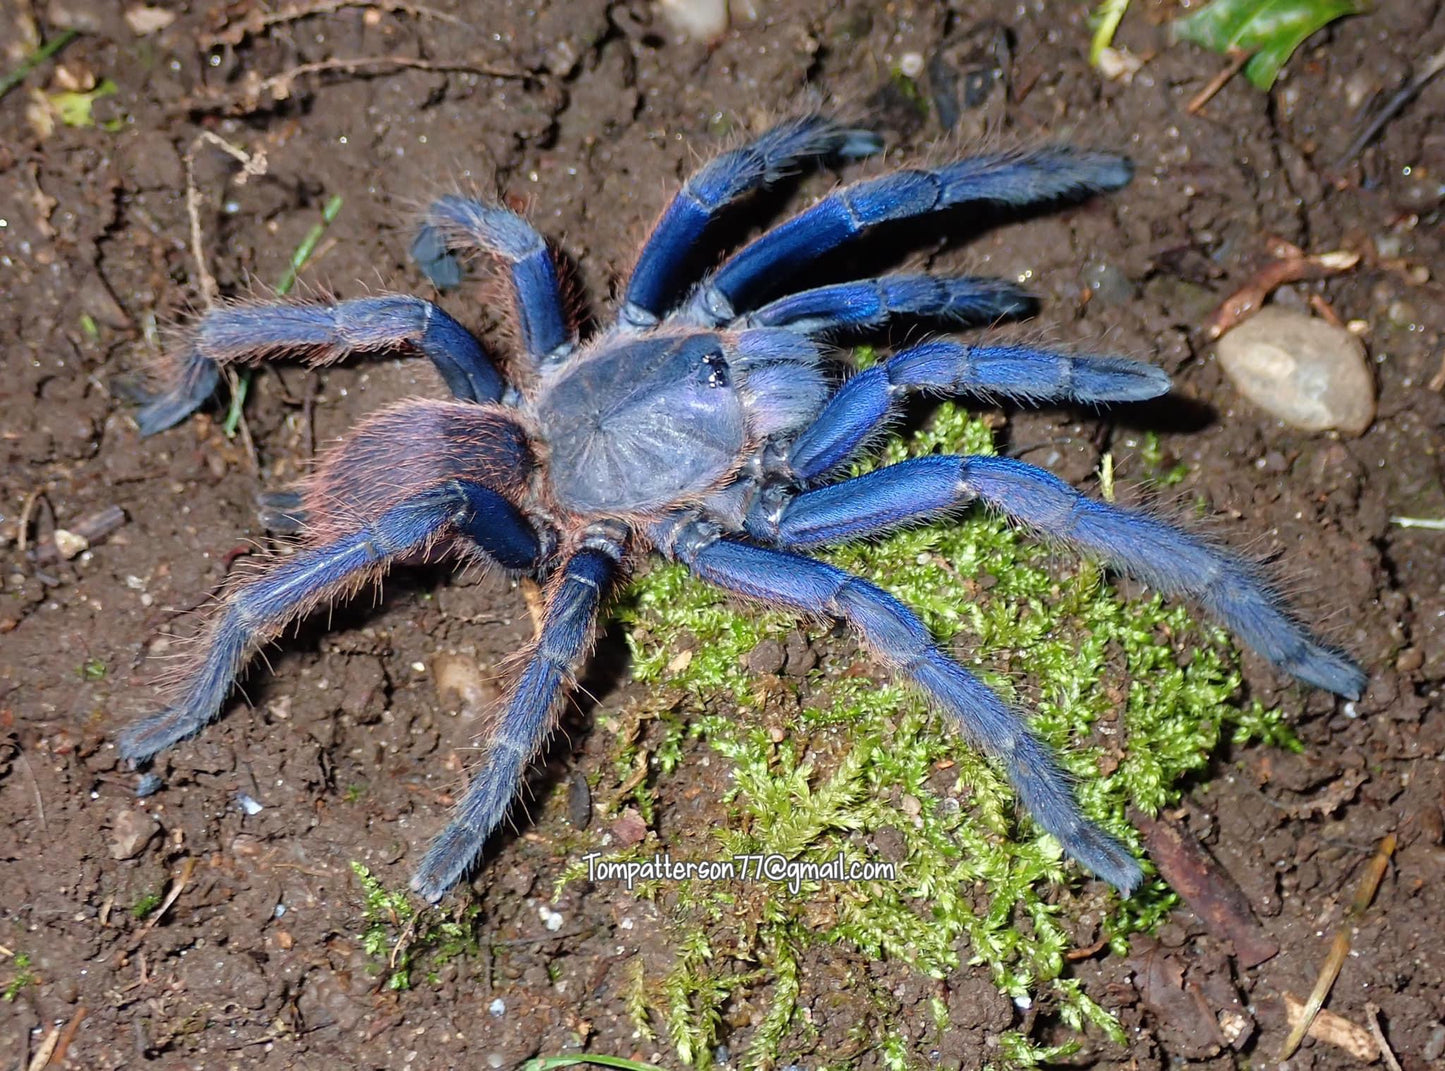 Chilobrachys sp. “South Vietnam blue”